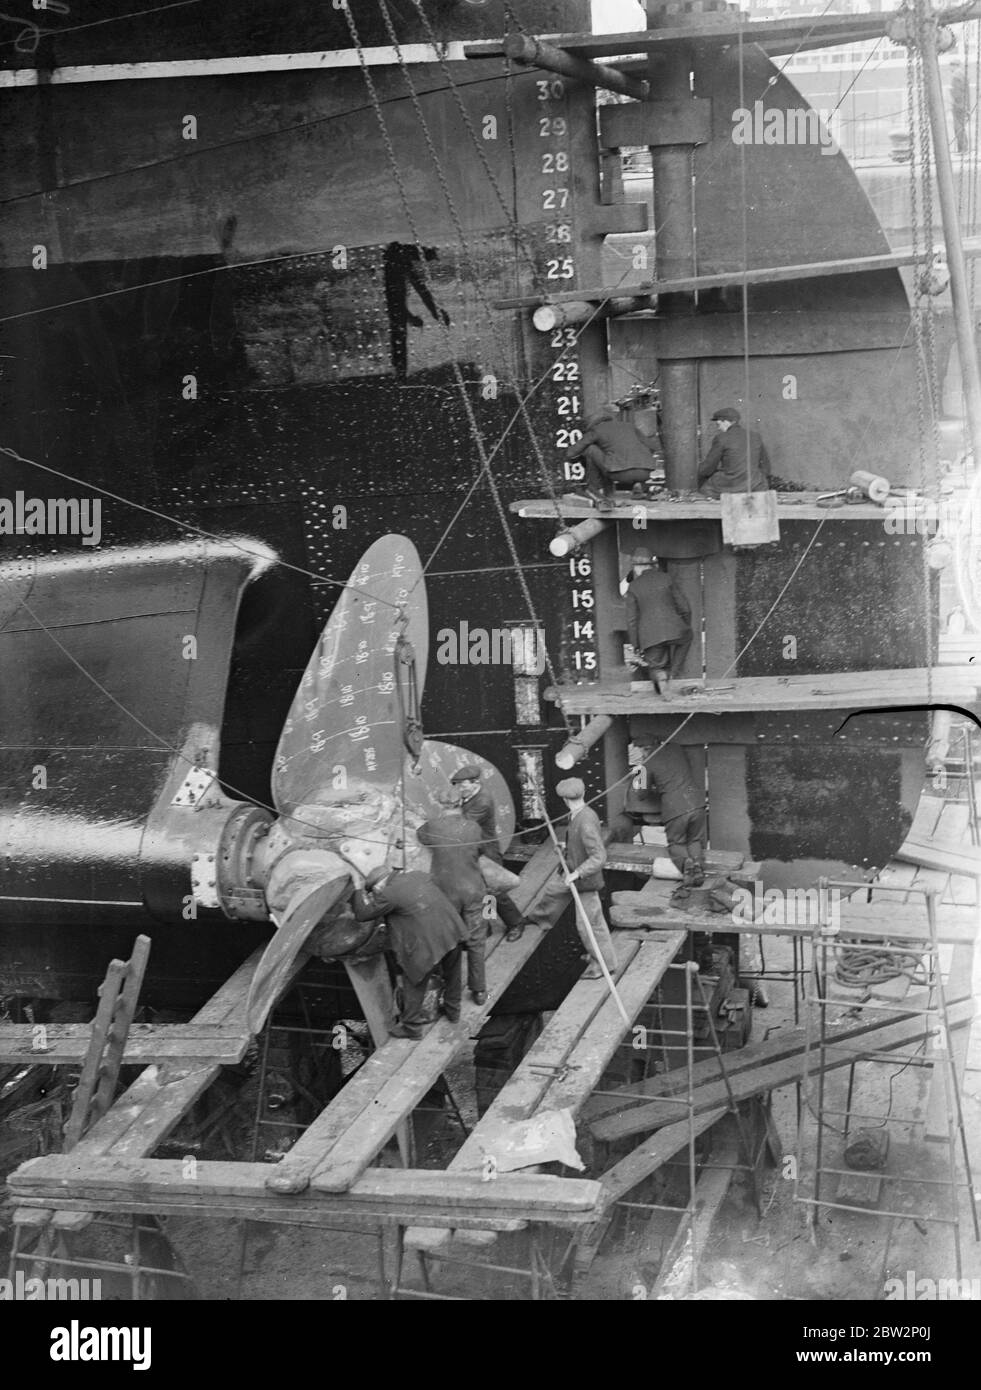 Überholung für einen Ozeanriesen. Untersuchung eines der riesigen Propeller der Cunard Liner Austonia während ihrer Überholung im Royal Albert Dry Dock, Silvertown, London. 10. April 1934 Stockfoto